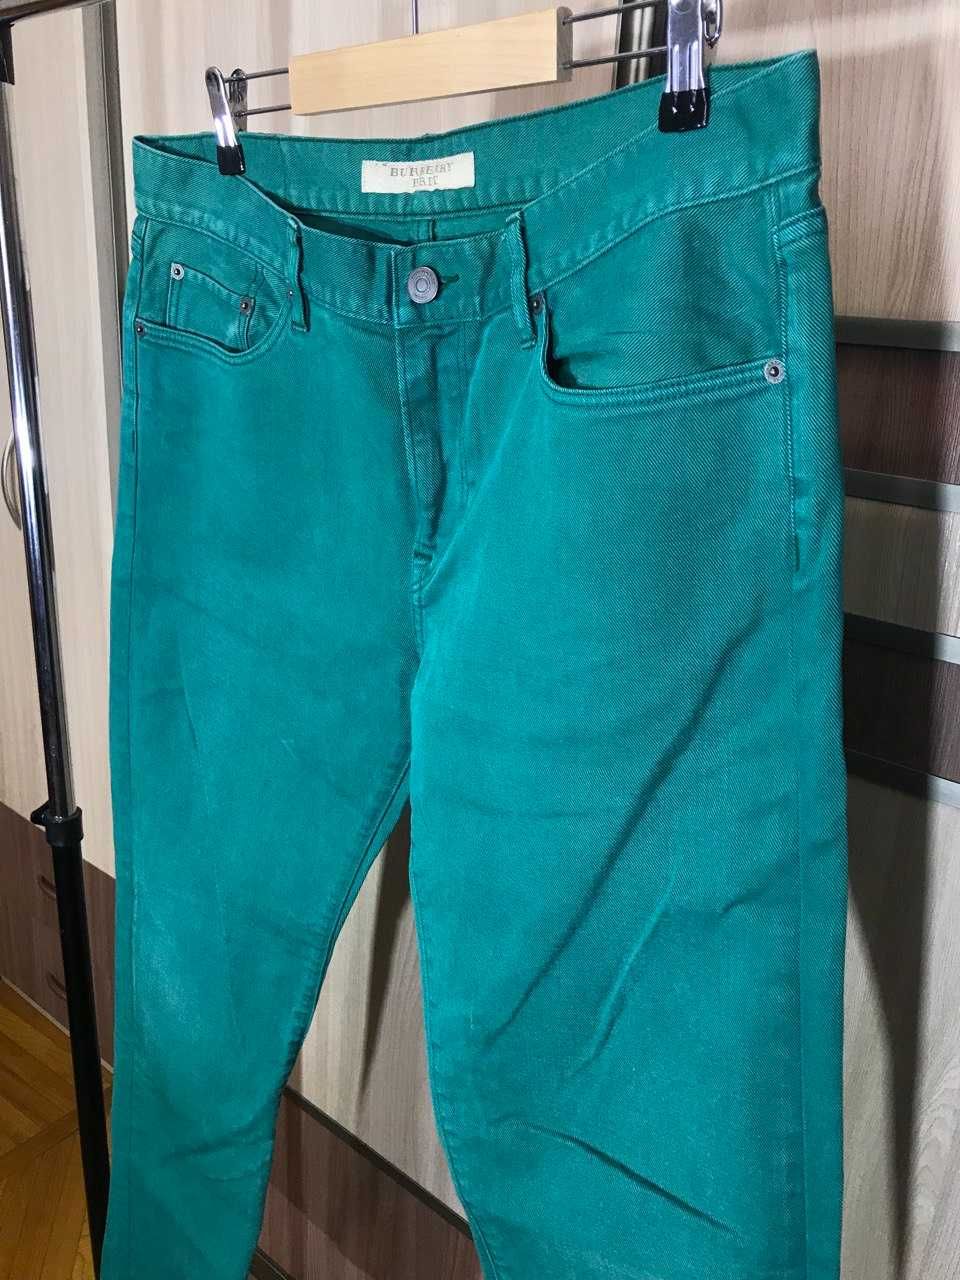 Мужские джинсы штаны Burberry Brit Size 34/32 оригинал